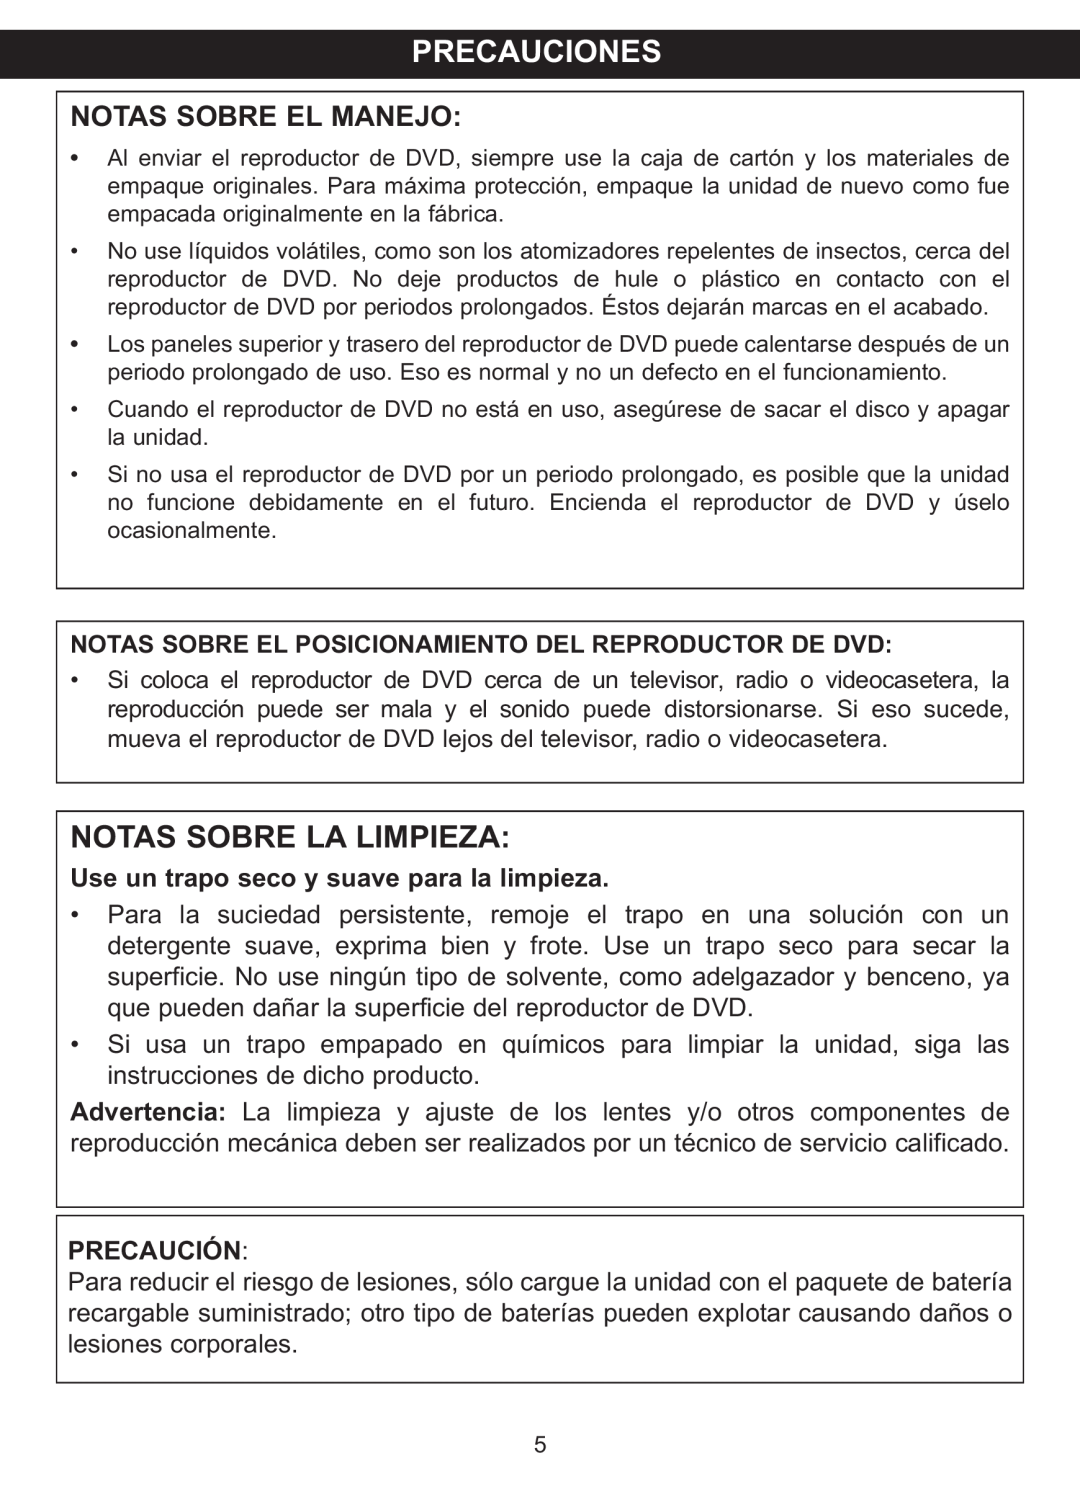 Memorex MVDP1088 Precauciones, Notas Sobre La Limpieza, Notas Sobre El Posicionamiento Del Reproductor De Dvd, Precaución 